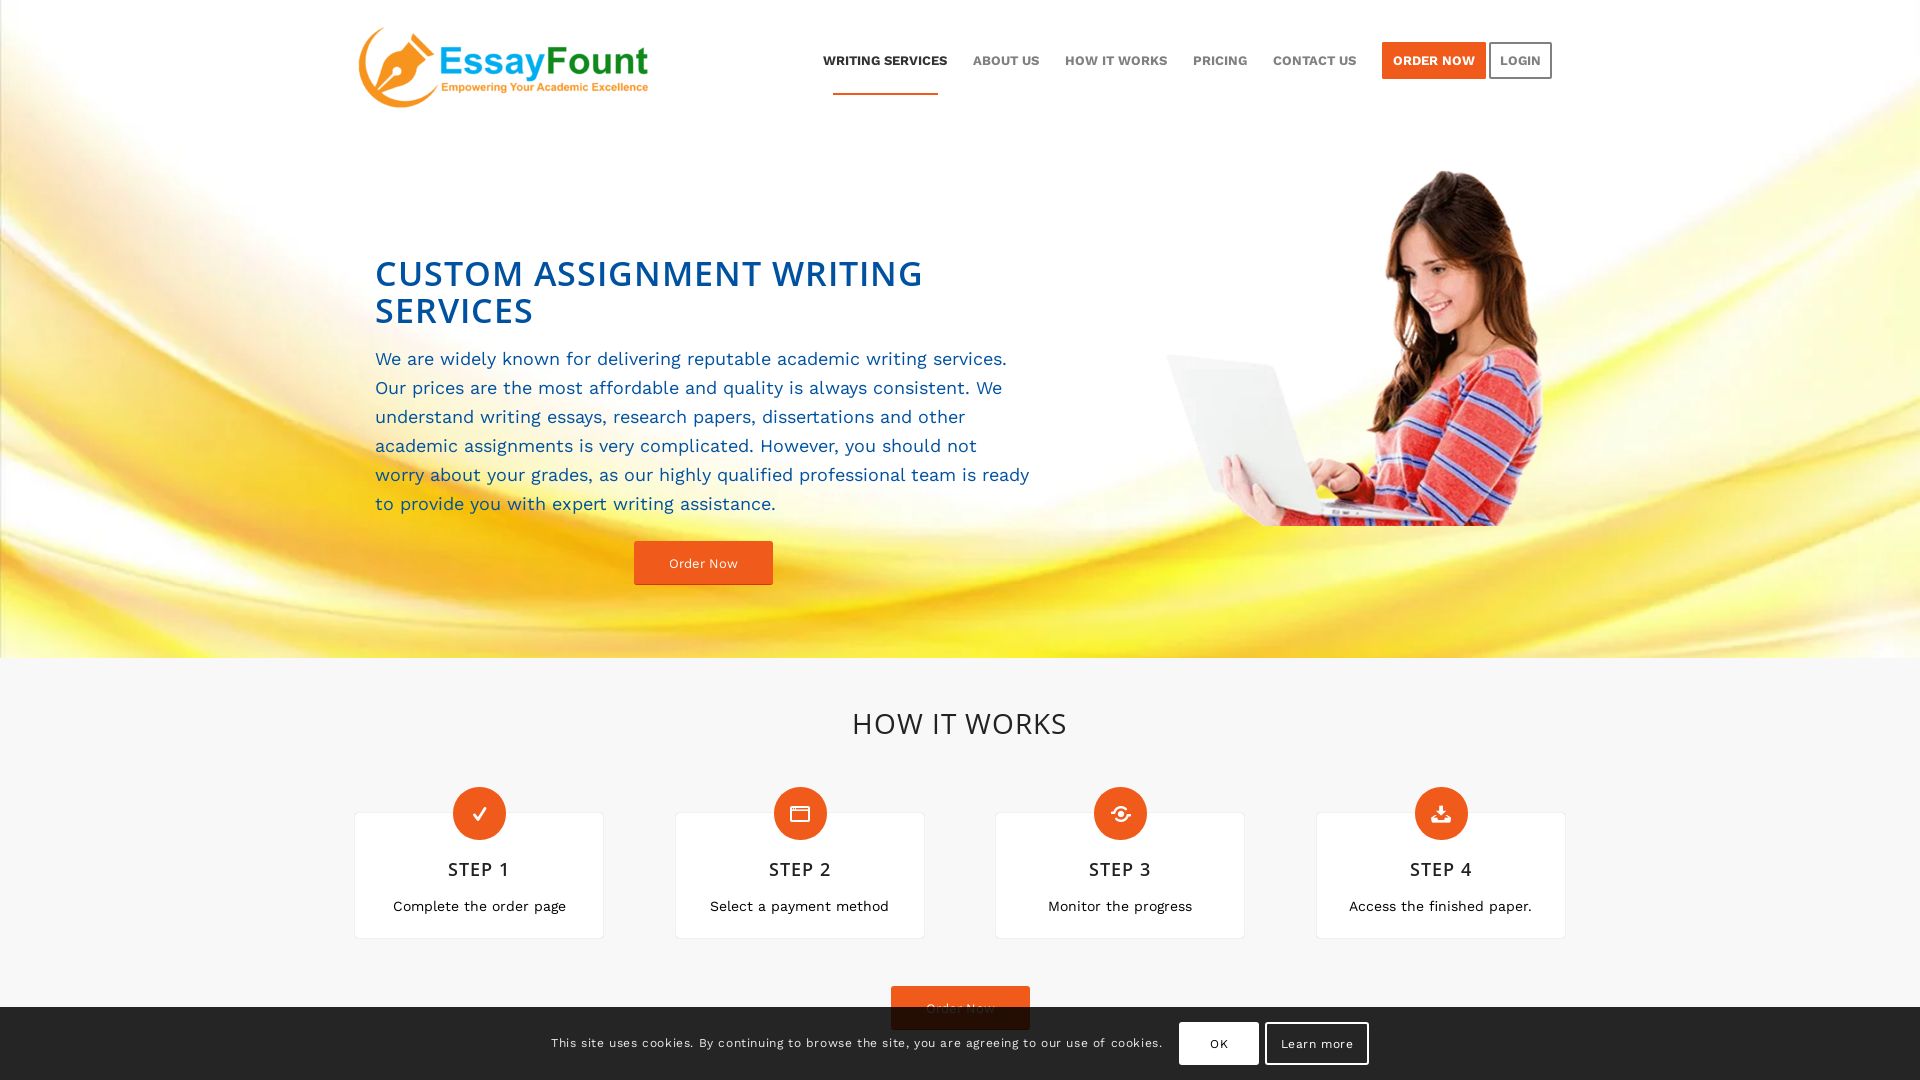 Stato del sito web essayfount.com è   ONLINE